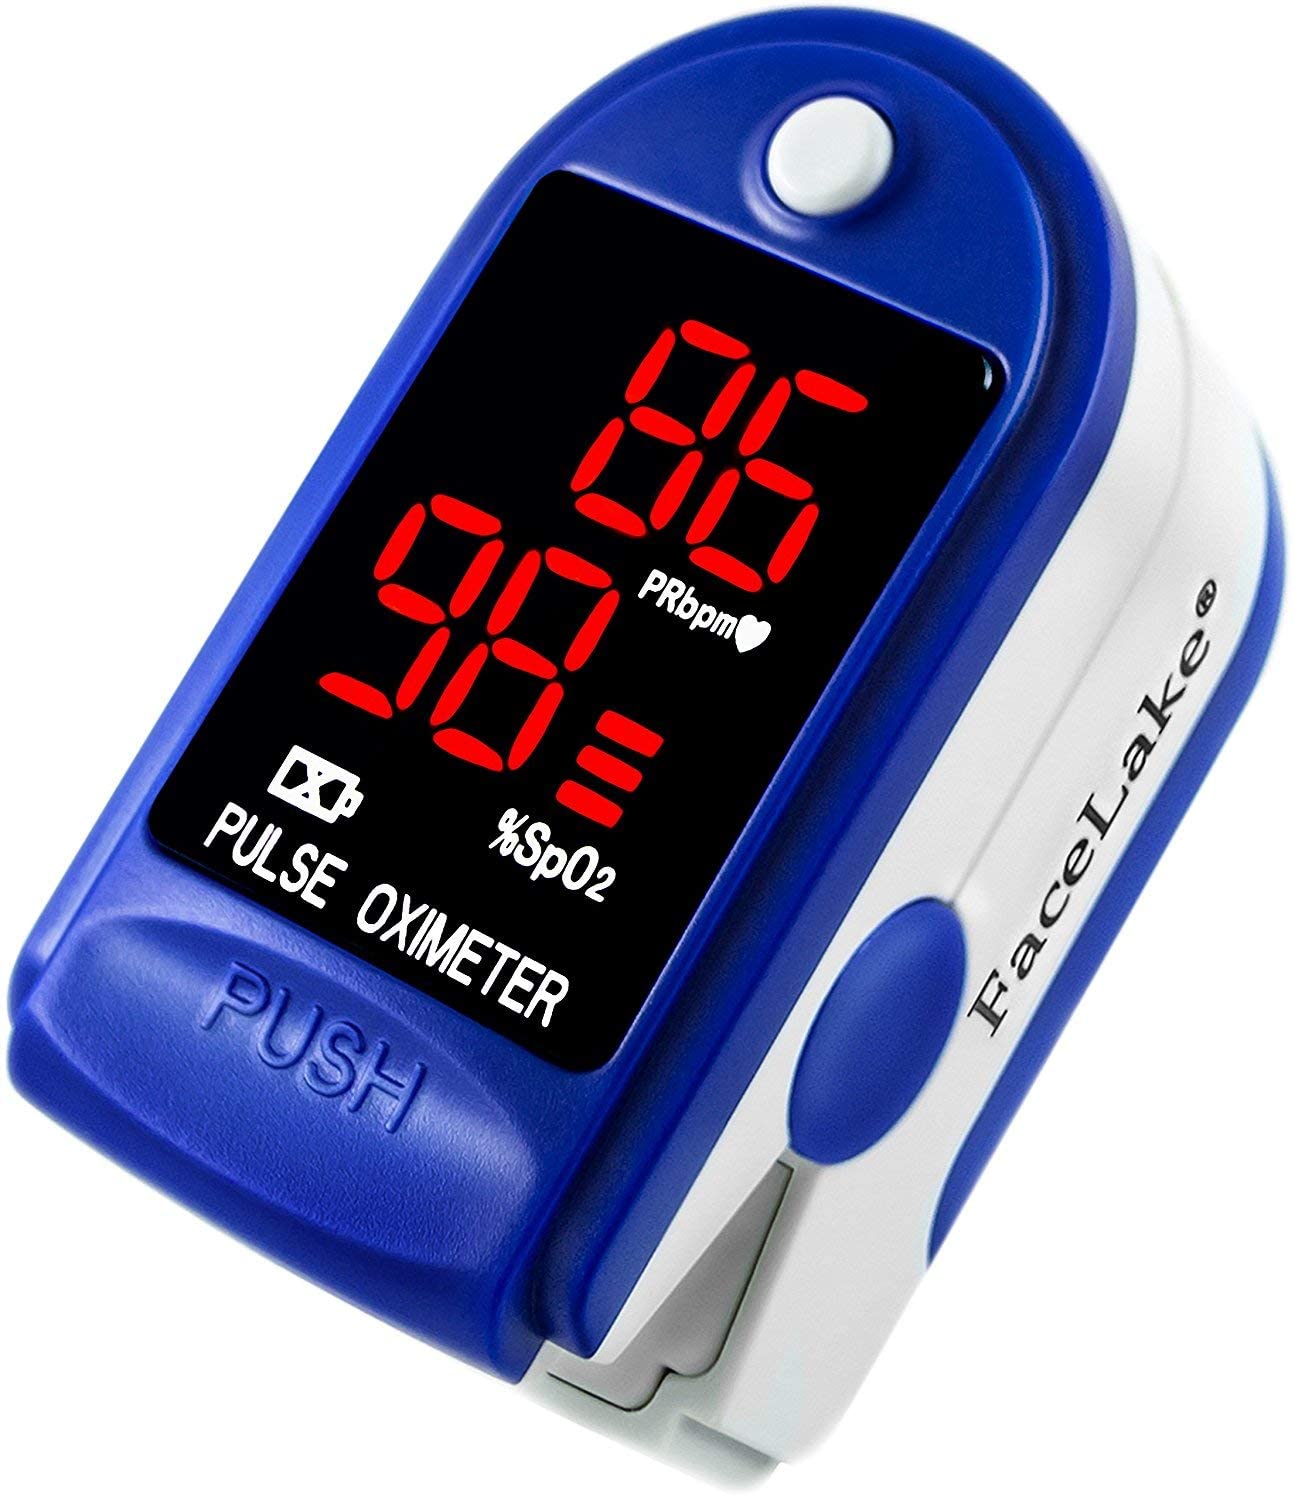 FaceLake-®-FL400-Pulse-Oximeter - anim age of oximeter